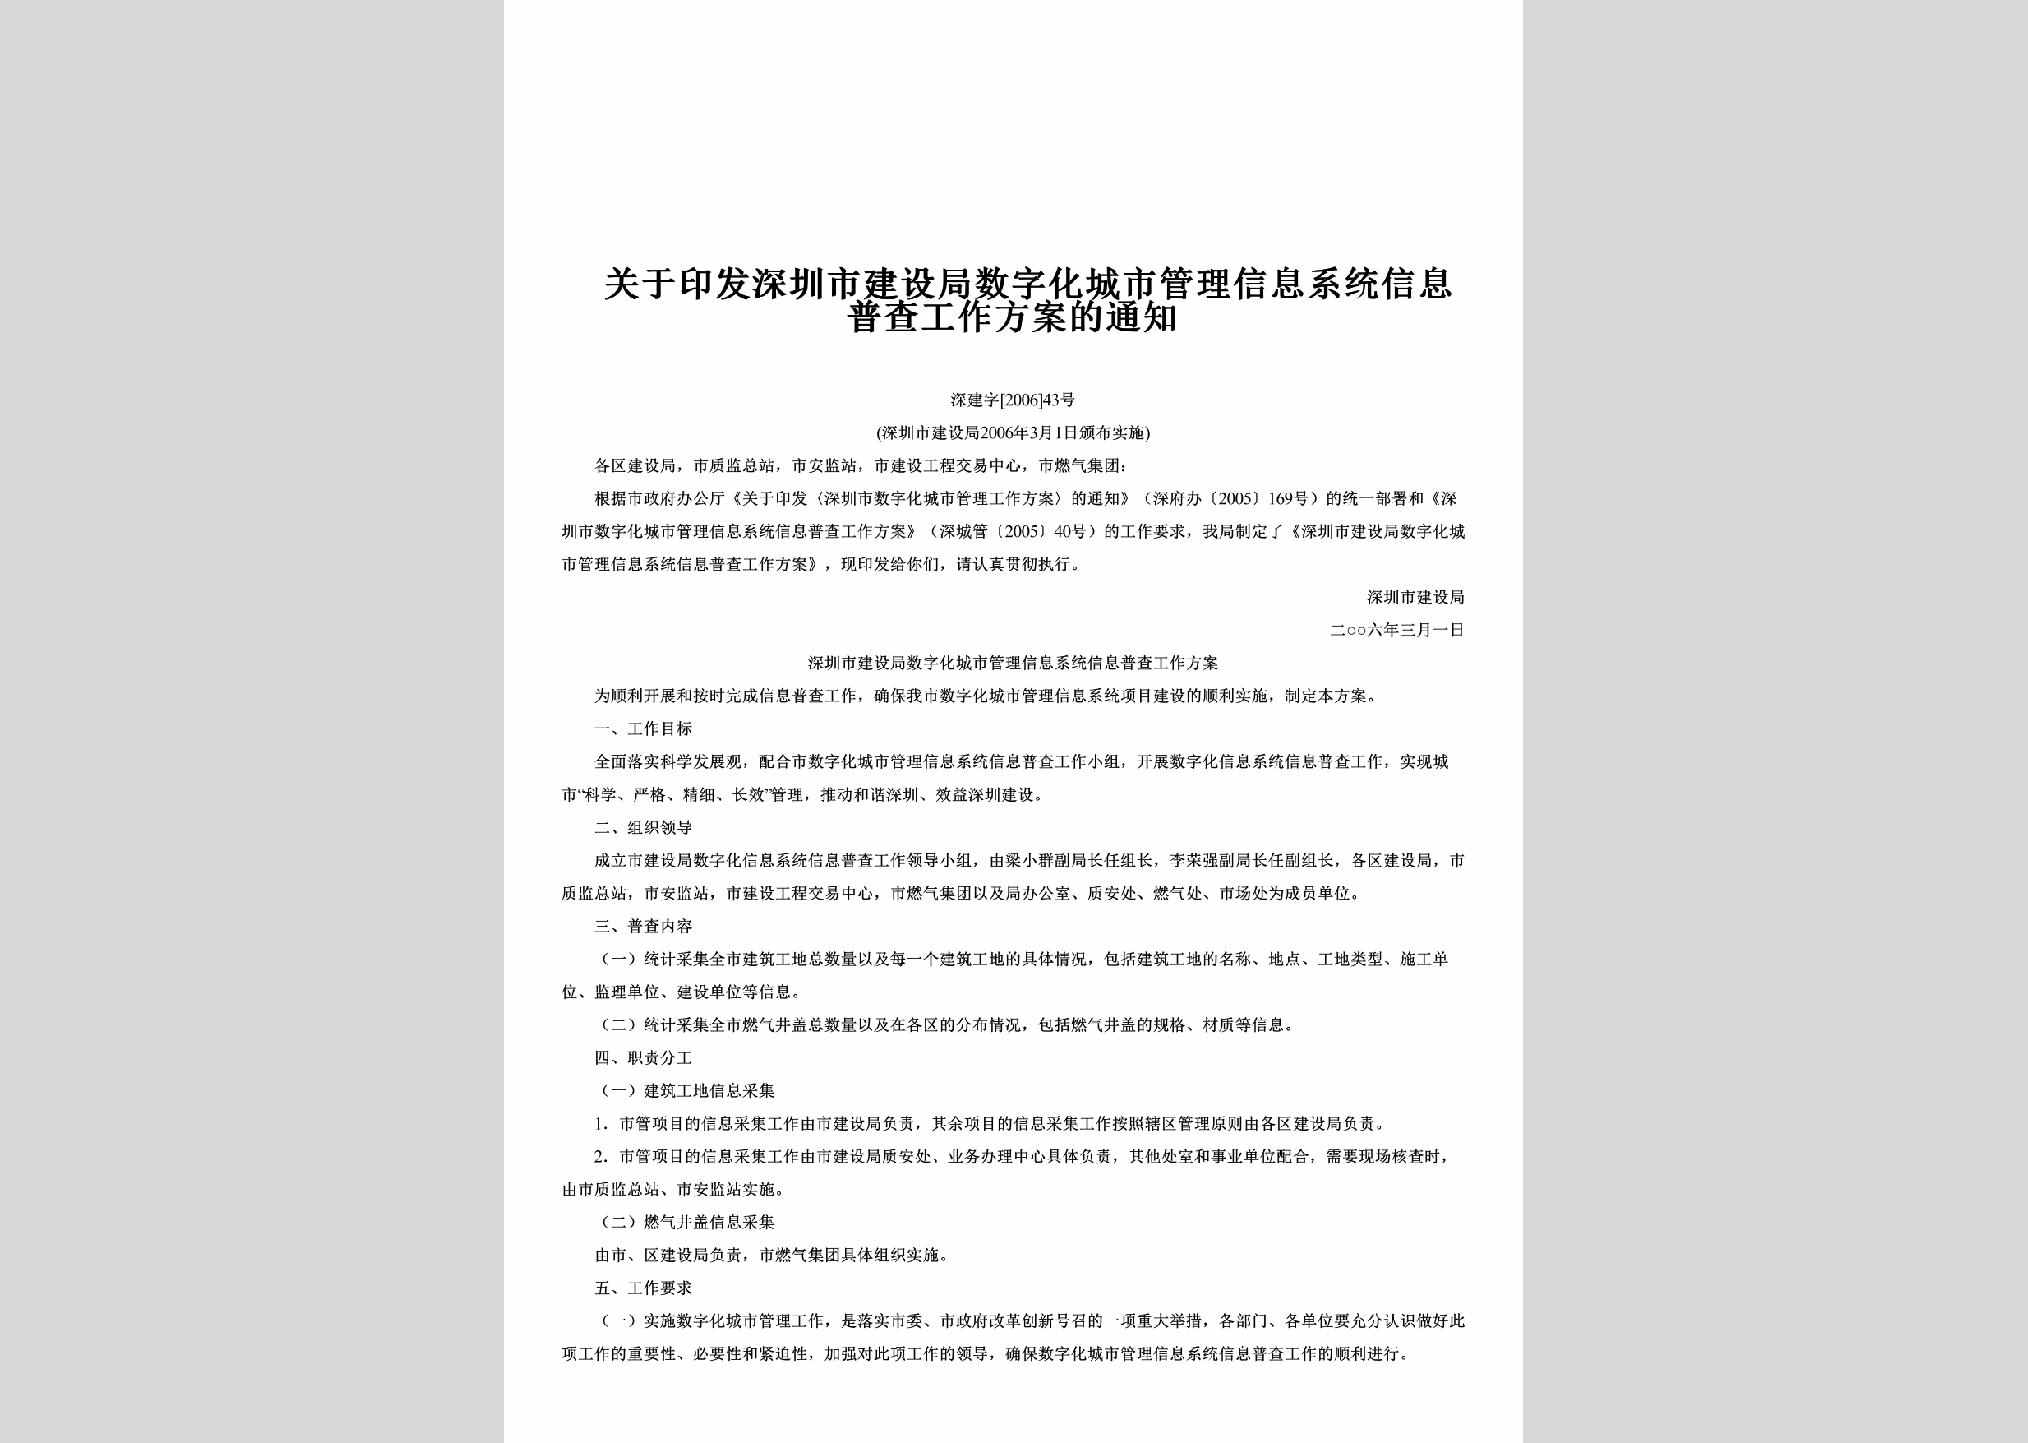 深建字[2006]43号：关于印发深圳市建设局数字化城市管理信息系统信息普查工作方案的通知